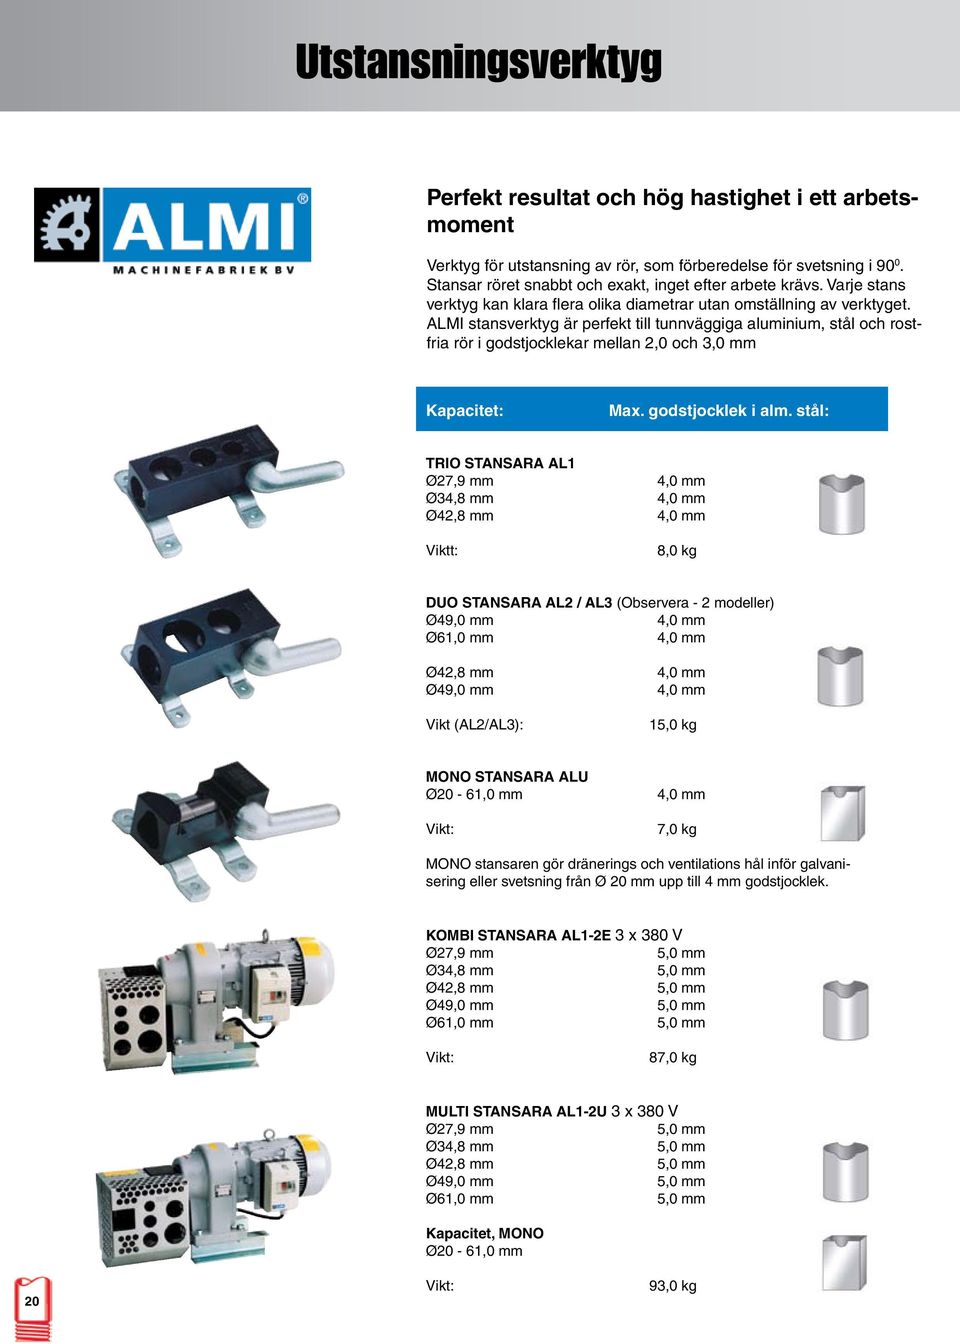 ALMI stansverktyg är perfekt till tunnväggiga aluminium, stål och rostfria rör i godstjocklekar mellan 2,0 och 3,0 mm Kapacitet: Max. godstjocklek i alm.